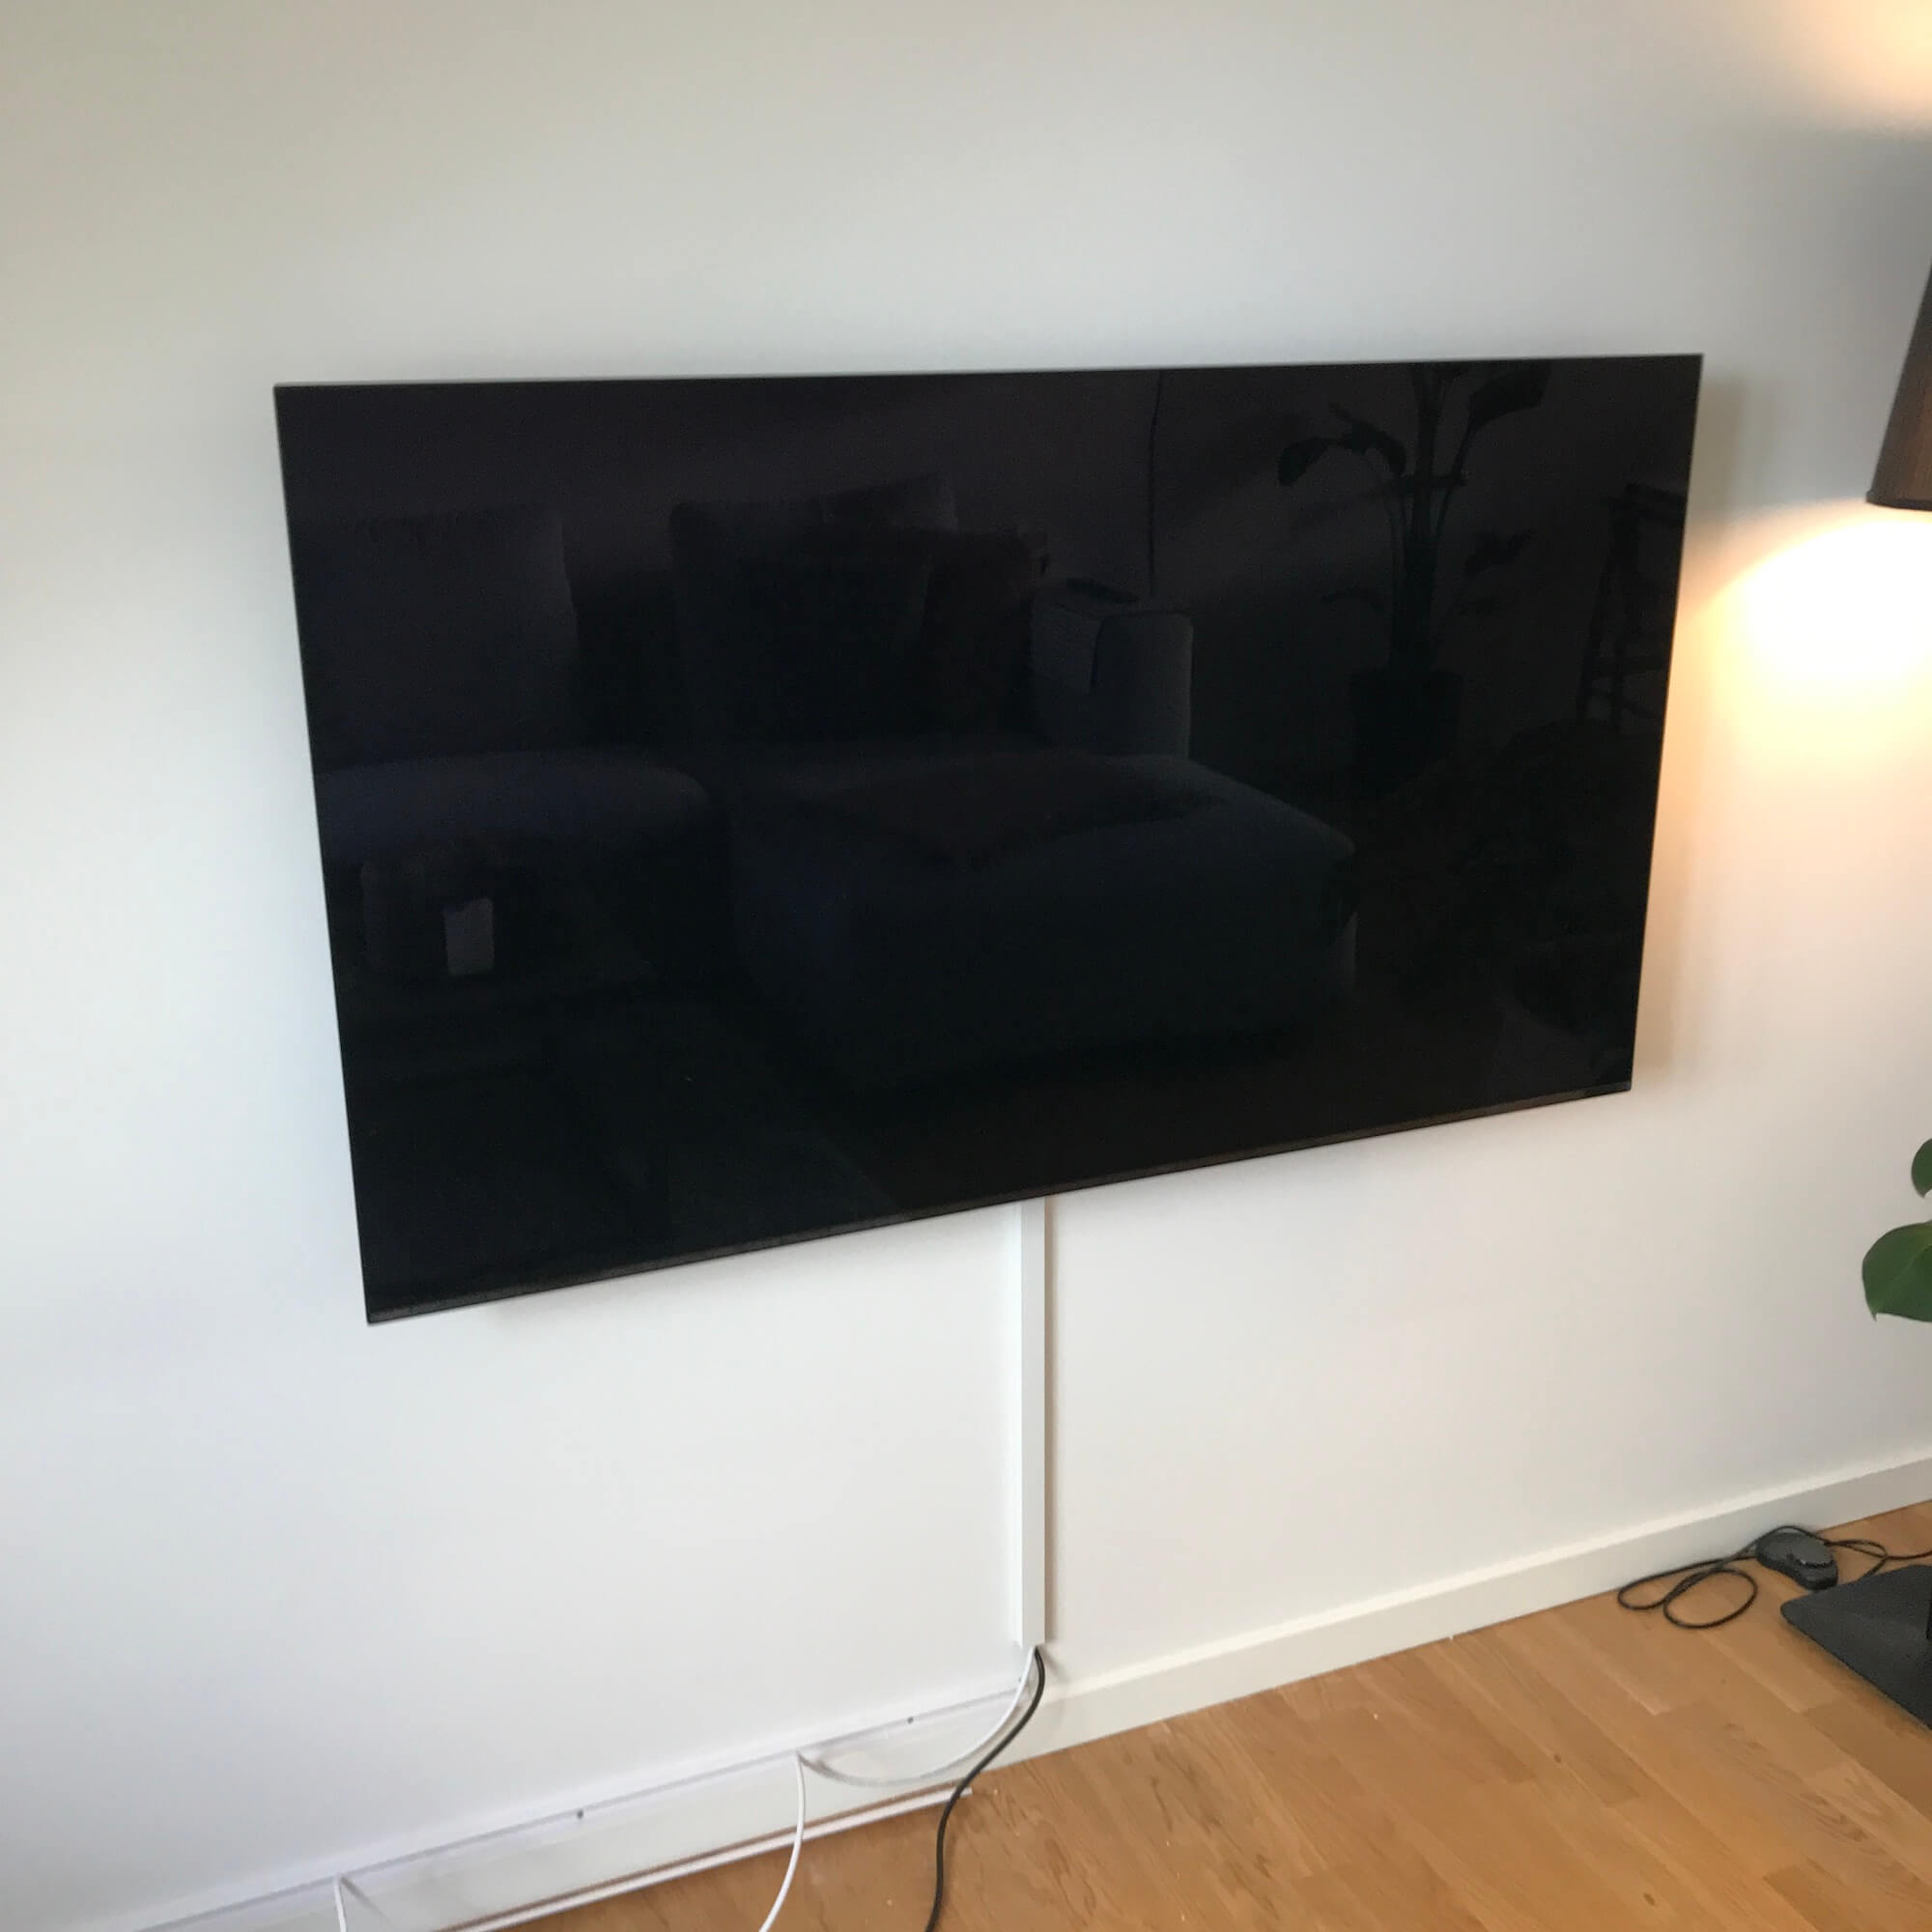 Væg-montering af LG TV